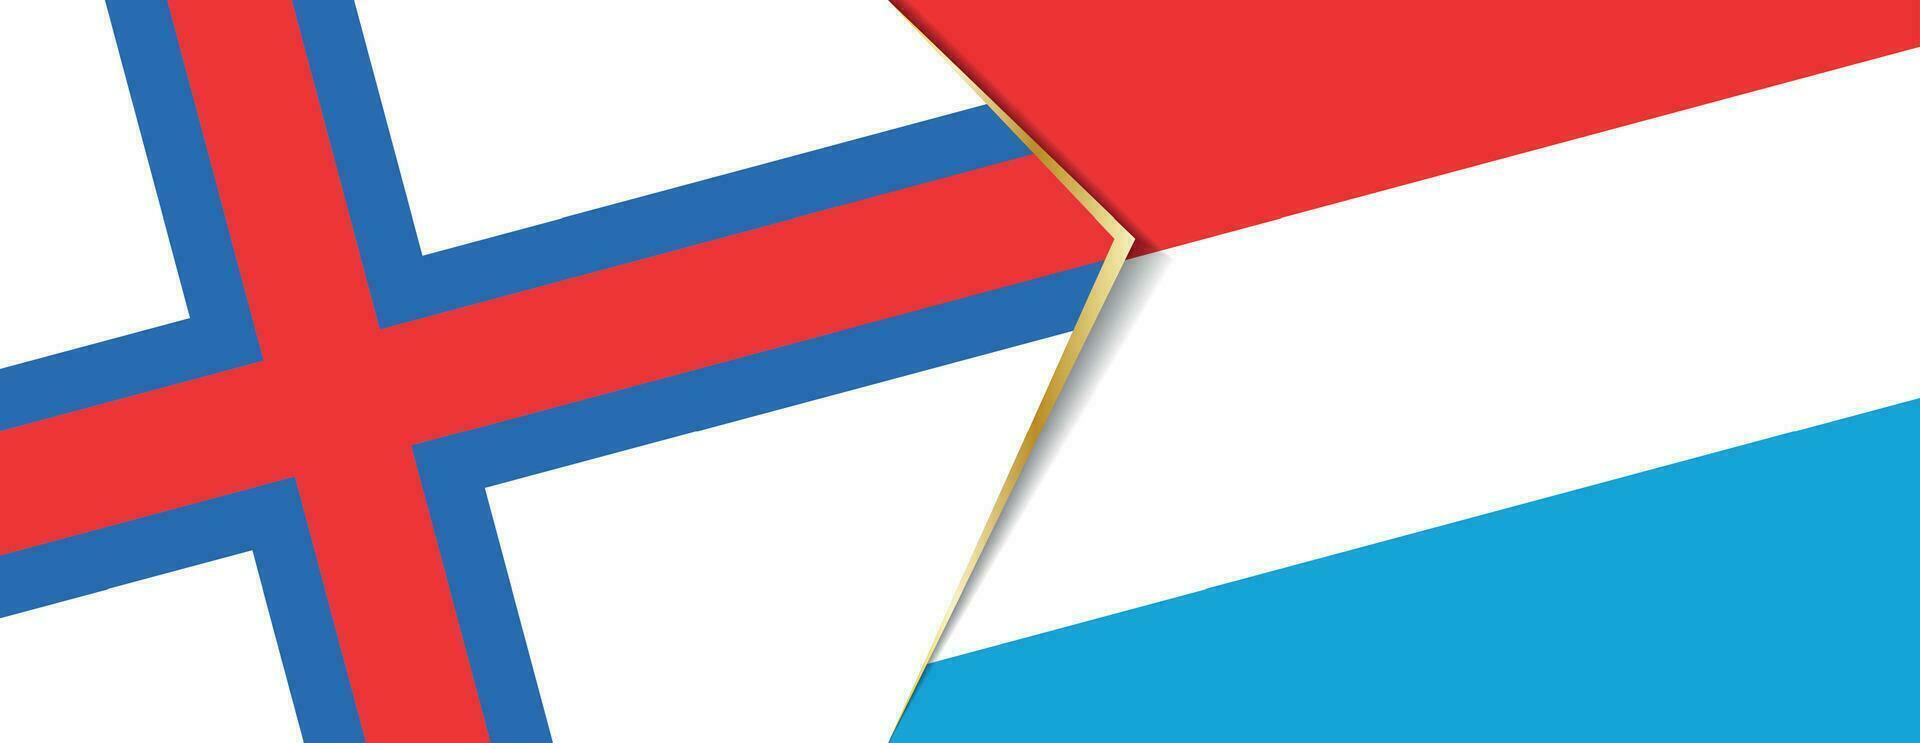 Féroé îles et Luxembourg drapeaux, deux vecteur drapeaux.